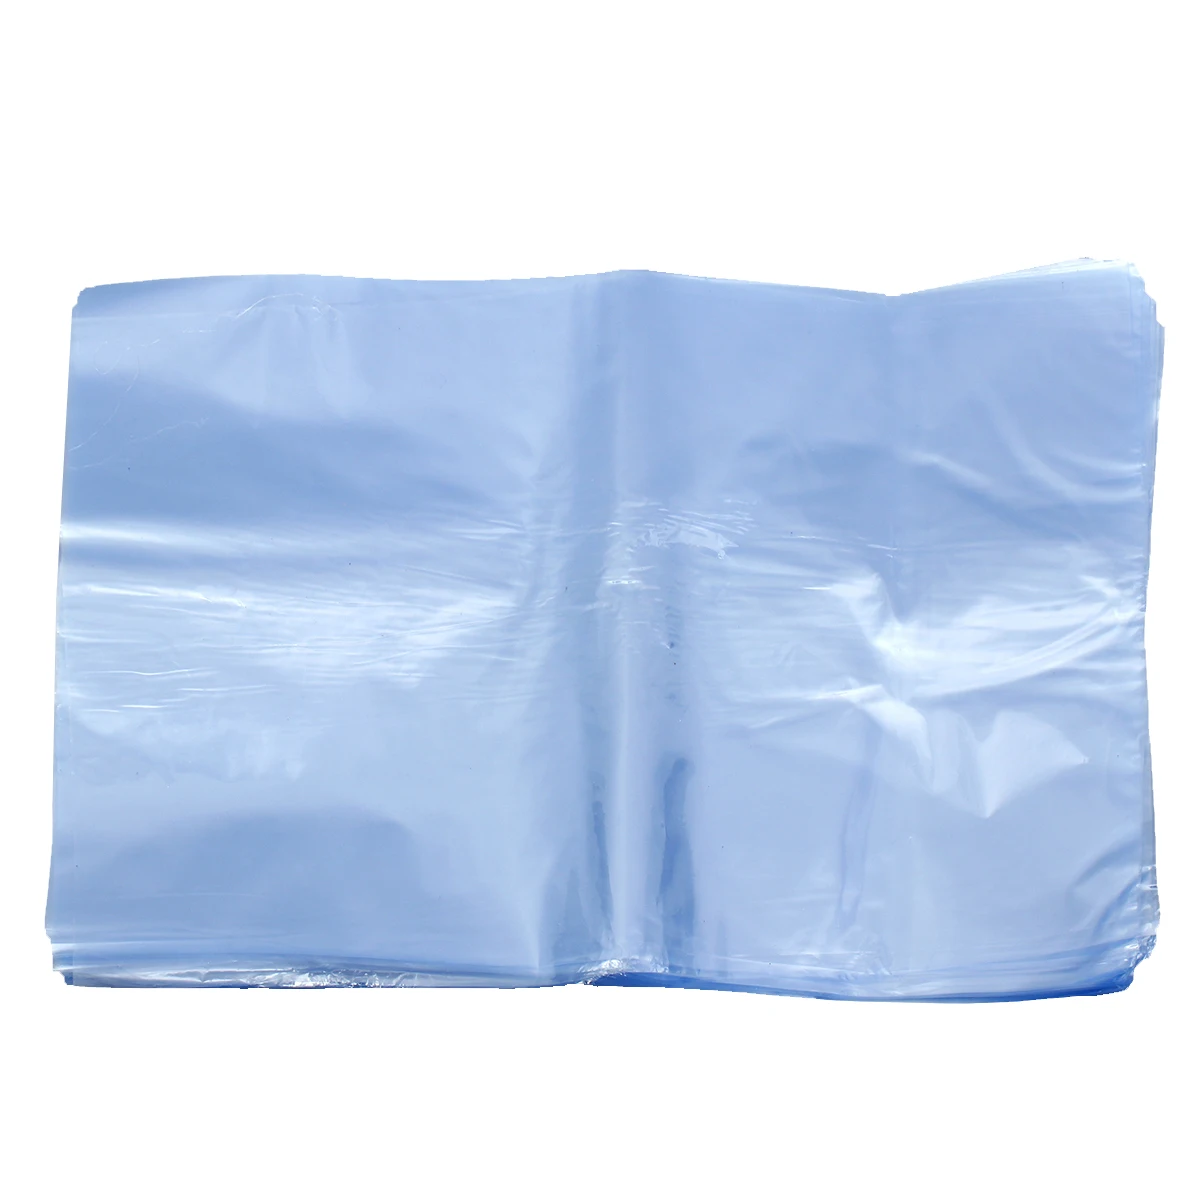 100 шт ПВХ термоусадочная пленка сумки плоский уплотнитель для алюминиевого профиля подарочная упаковка 8 дюймов x 12 дюймов